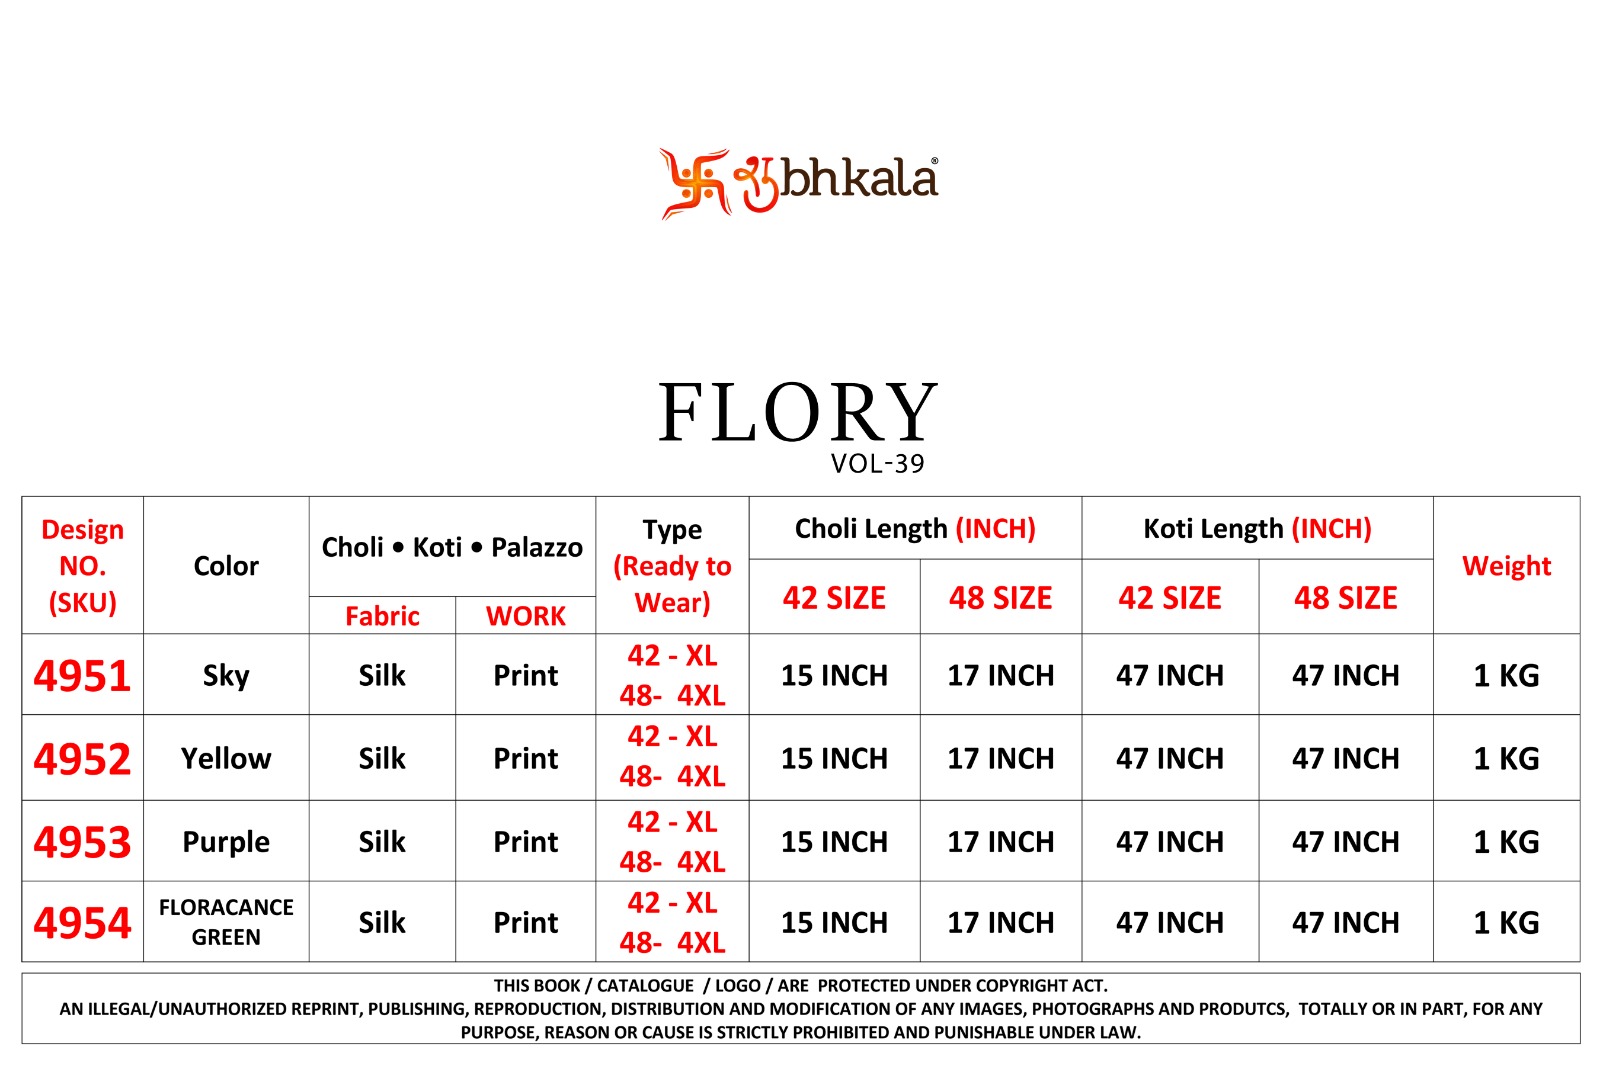 Shubhkala Flory Vol 39 collection 2